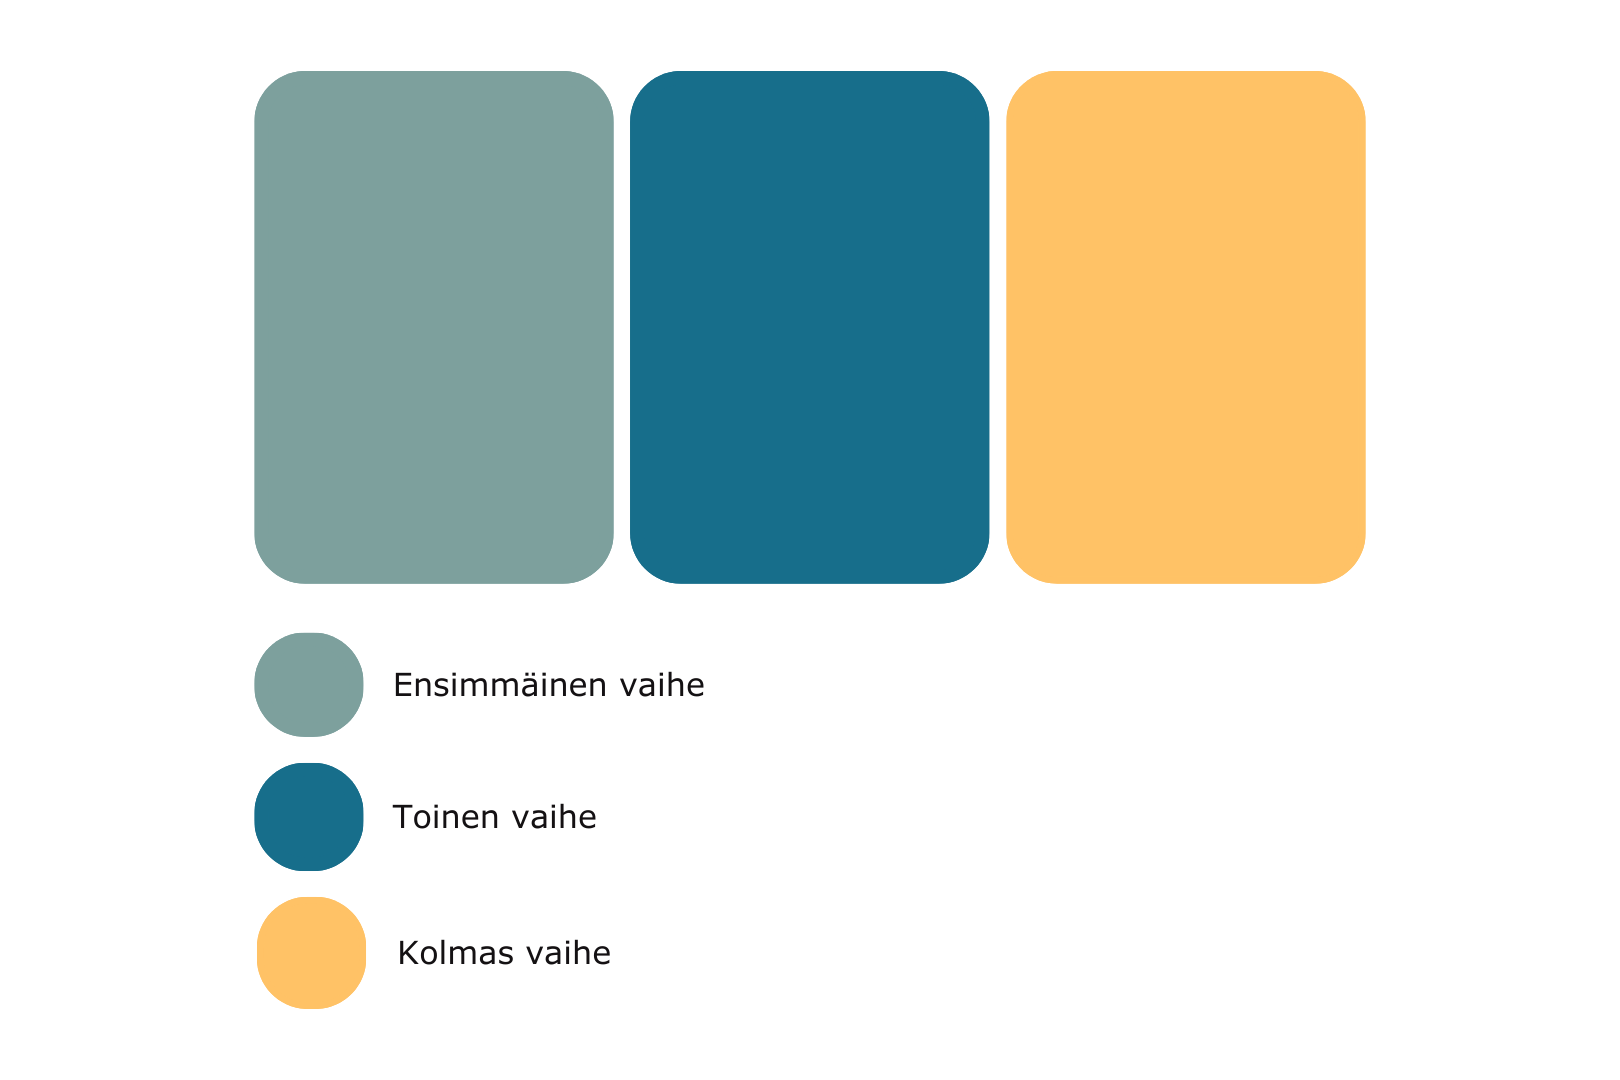 Kolme eriväristä palkkia, joista vihreä kuvastaa ensimmäistä vaihetta, sininen toista ja keltainen kolmatta.